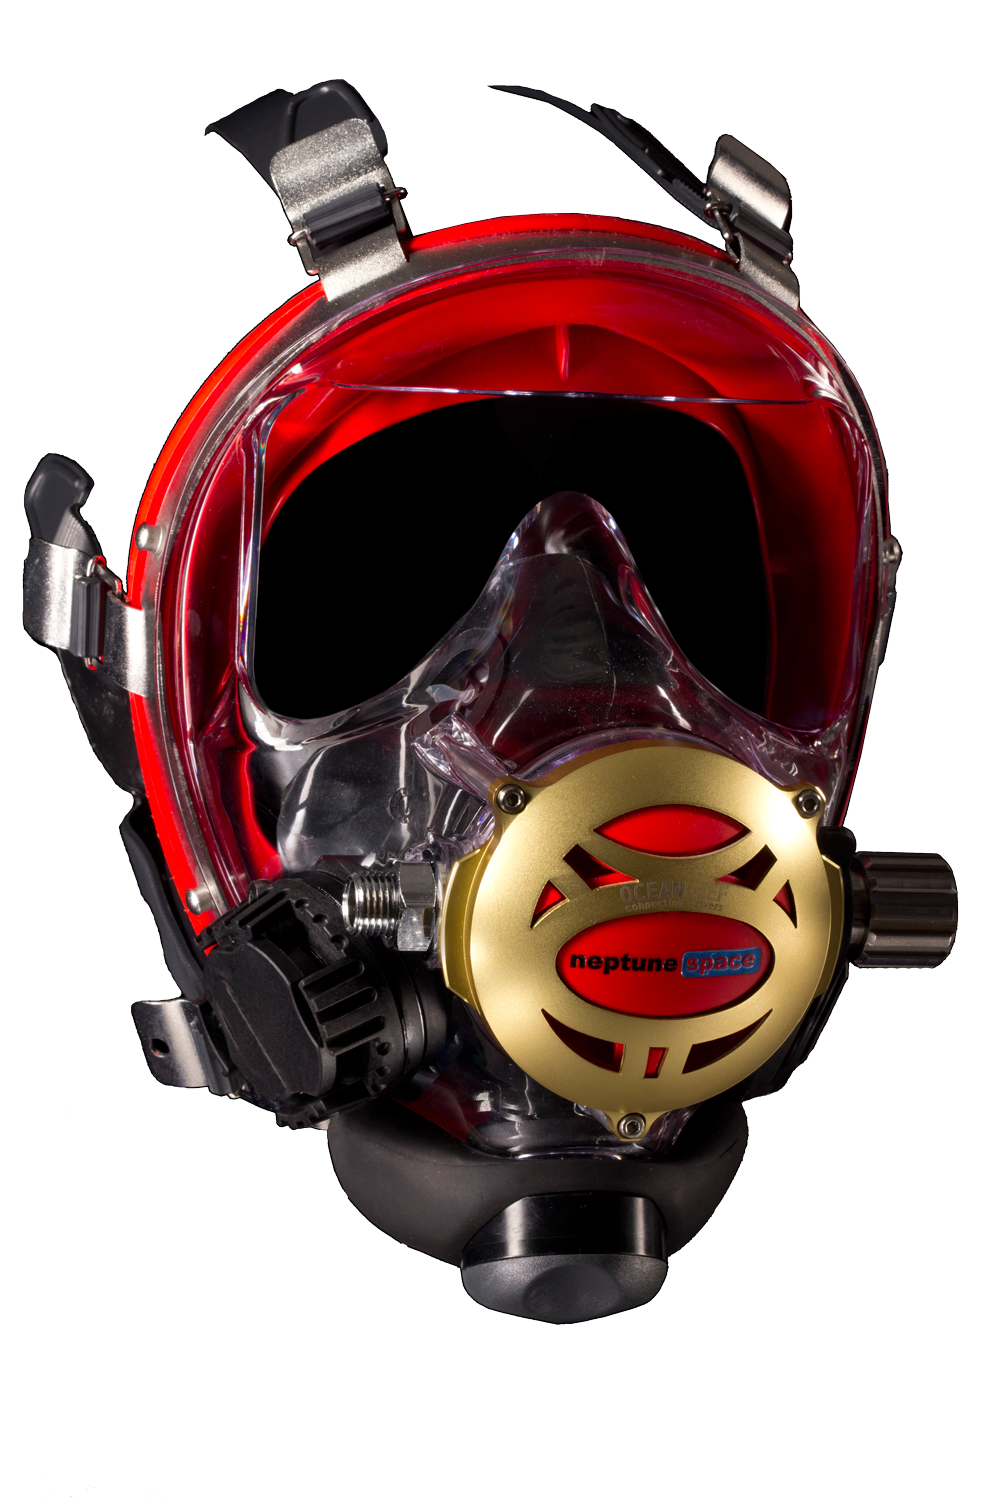 呼吸管、潜水面罩